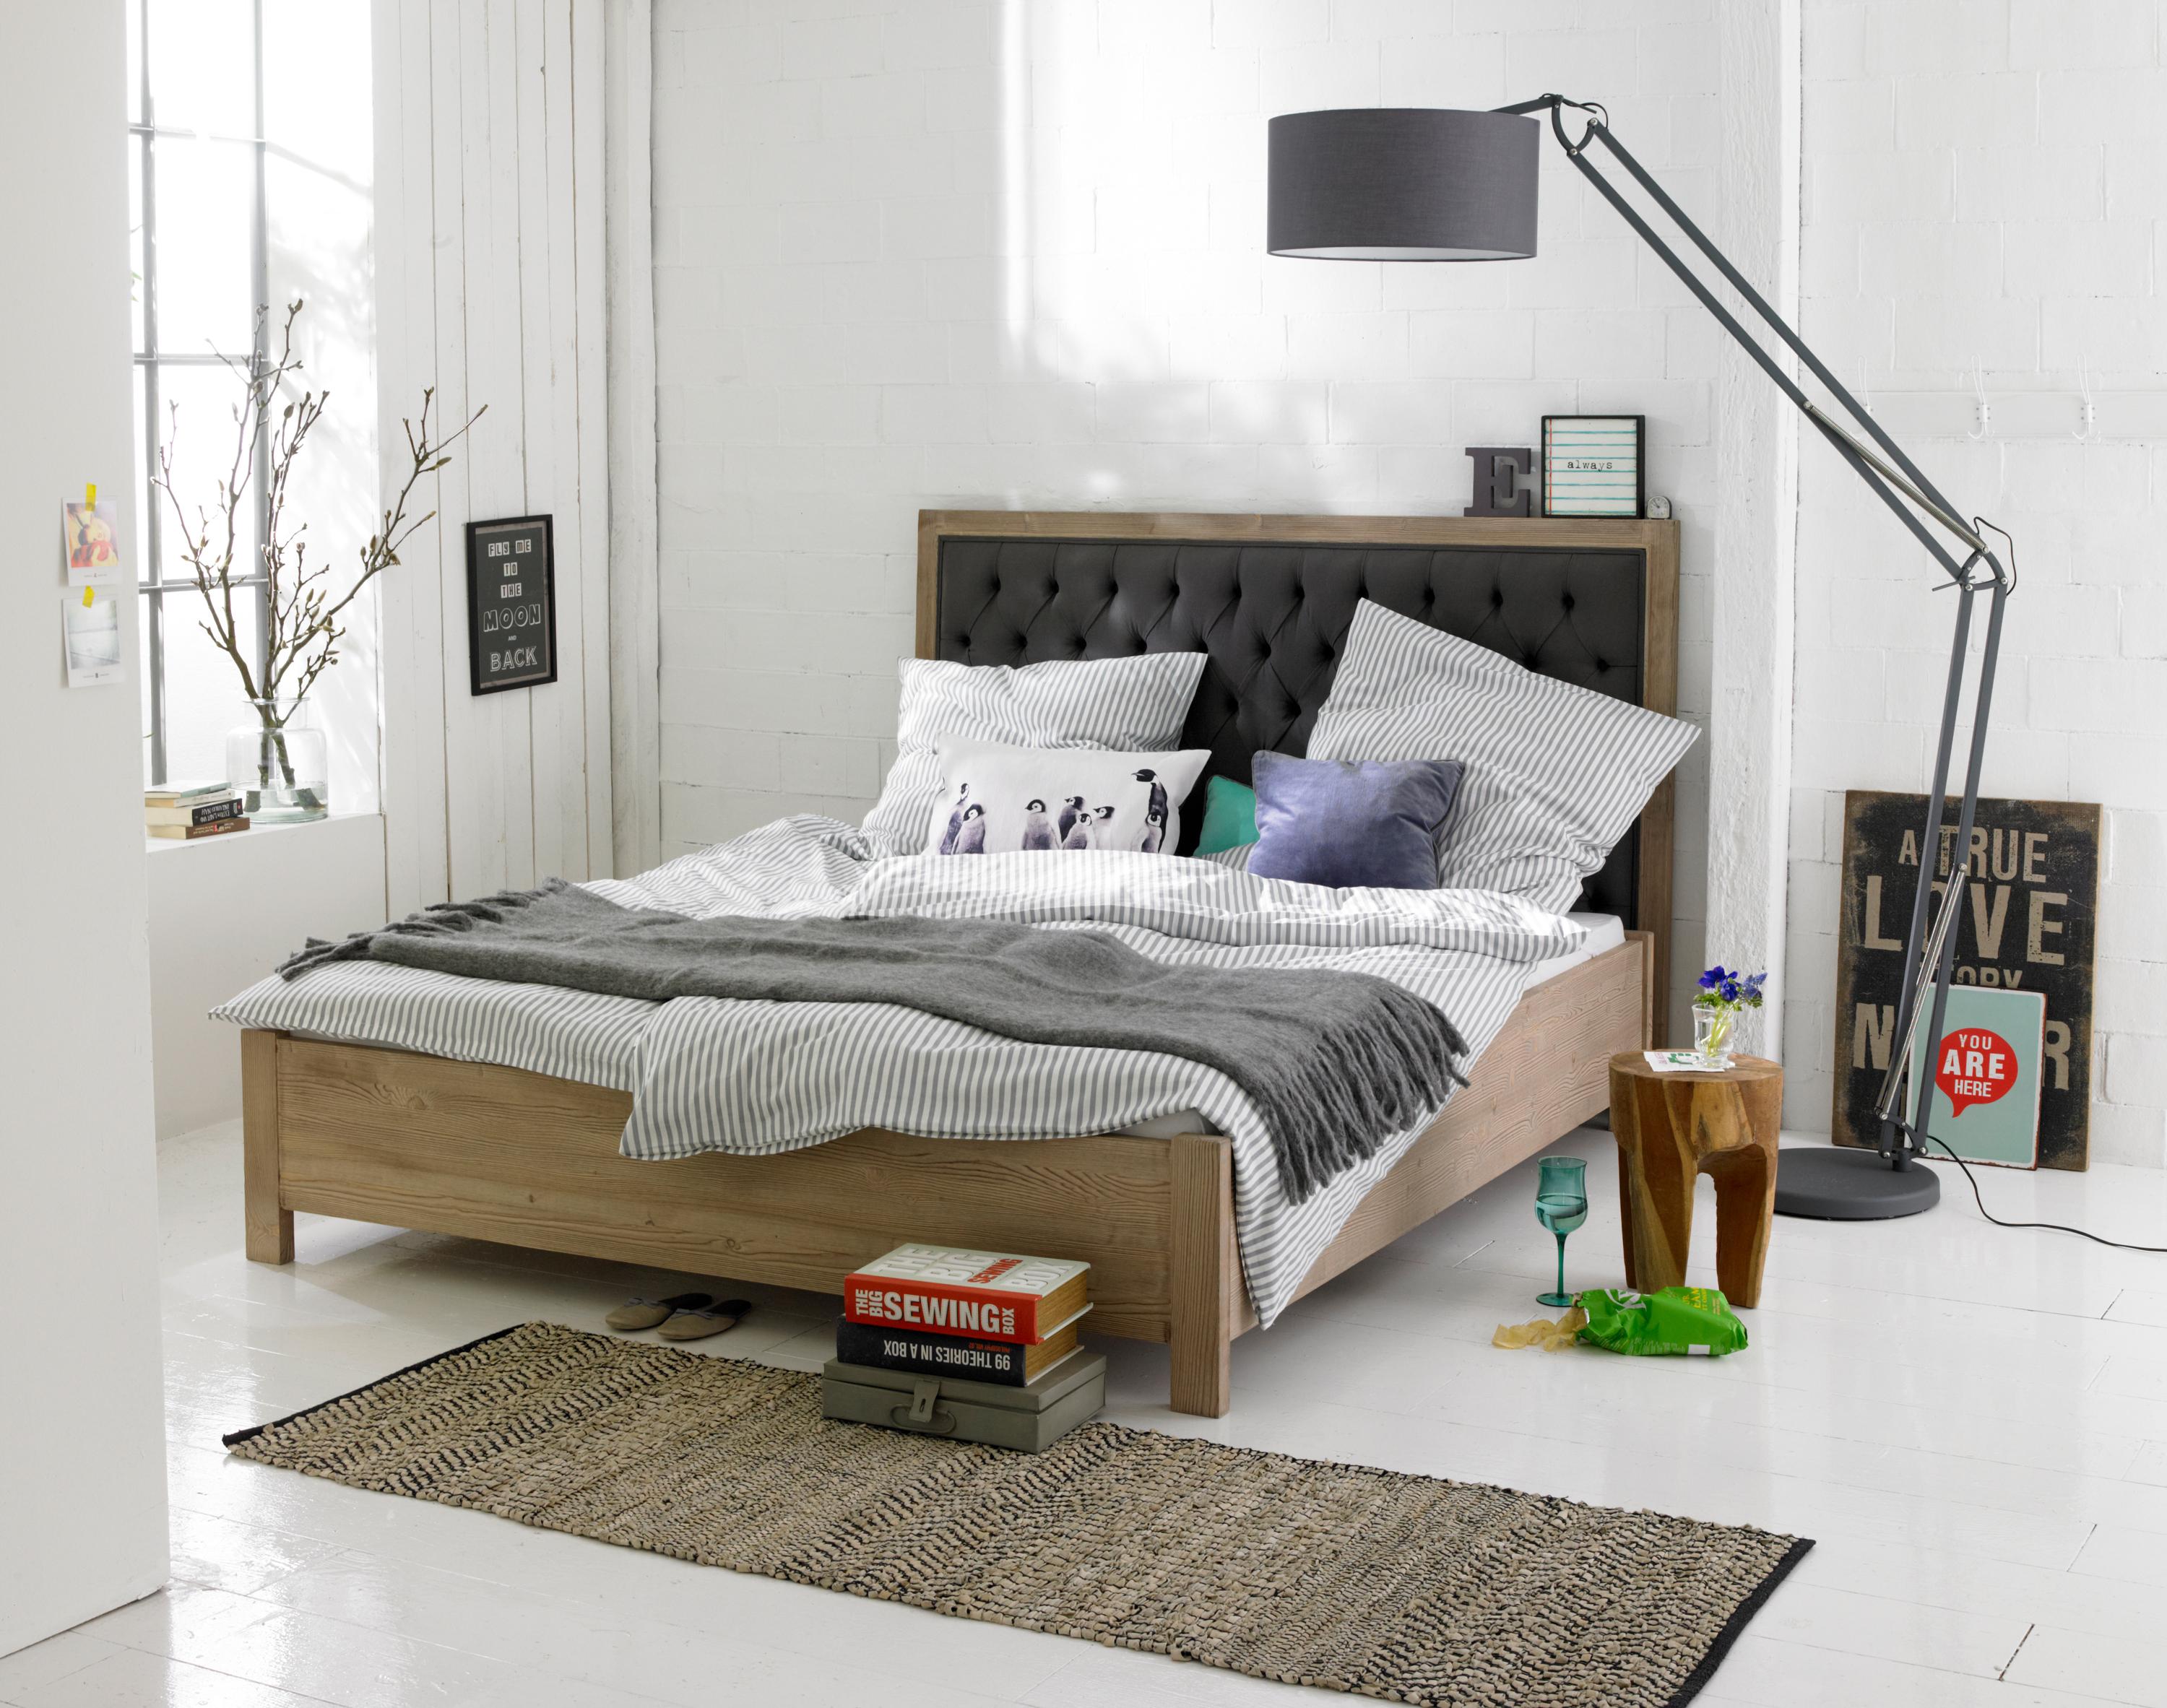 Schlafzimmer in natürlichen Farbtönen #bett #hocker #teppich #bettwäsche #stehlampe #tagesdecke #holzhocker #sisalteppich #pflanzendeko ©Car Möbel